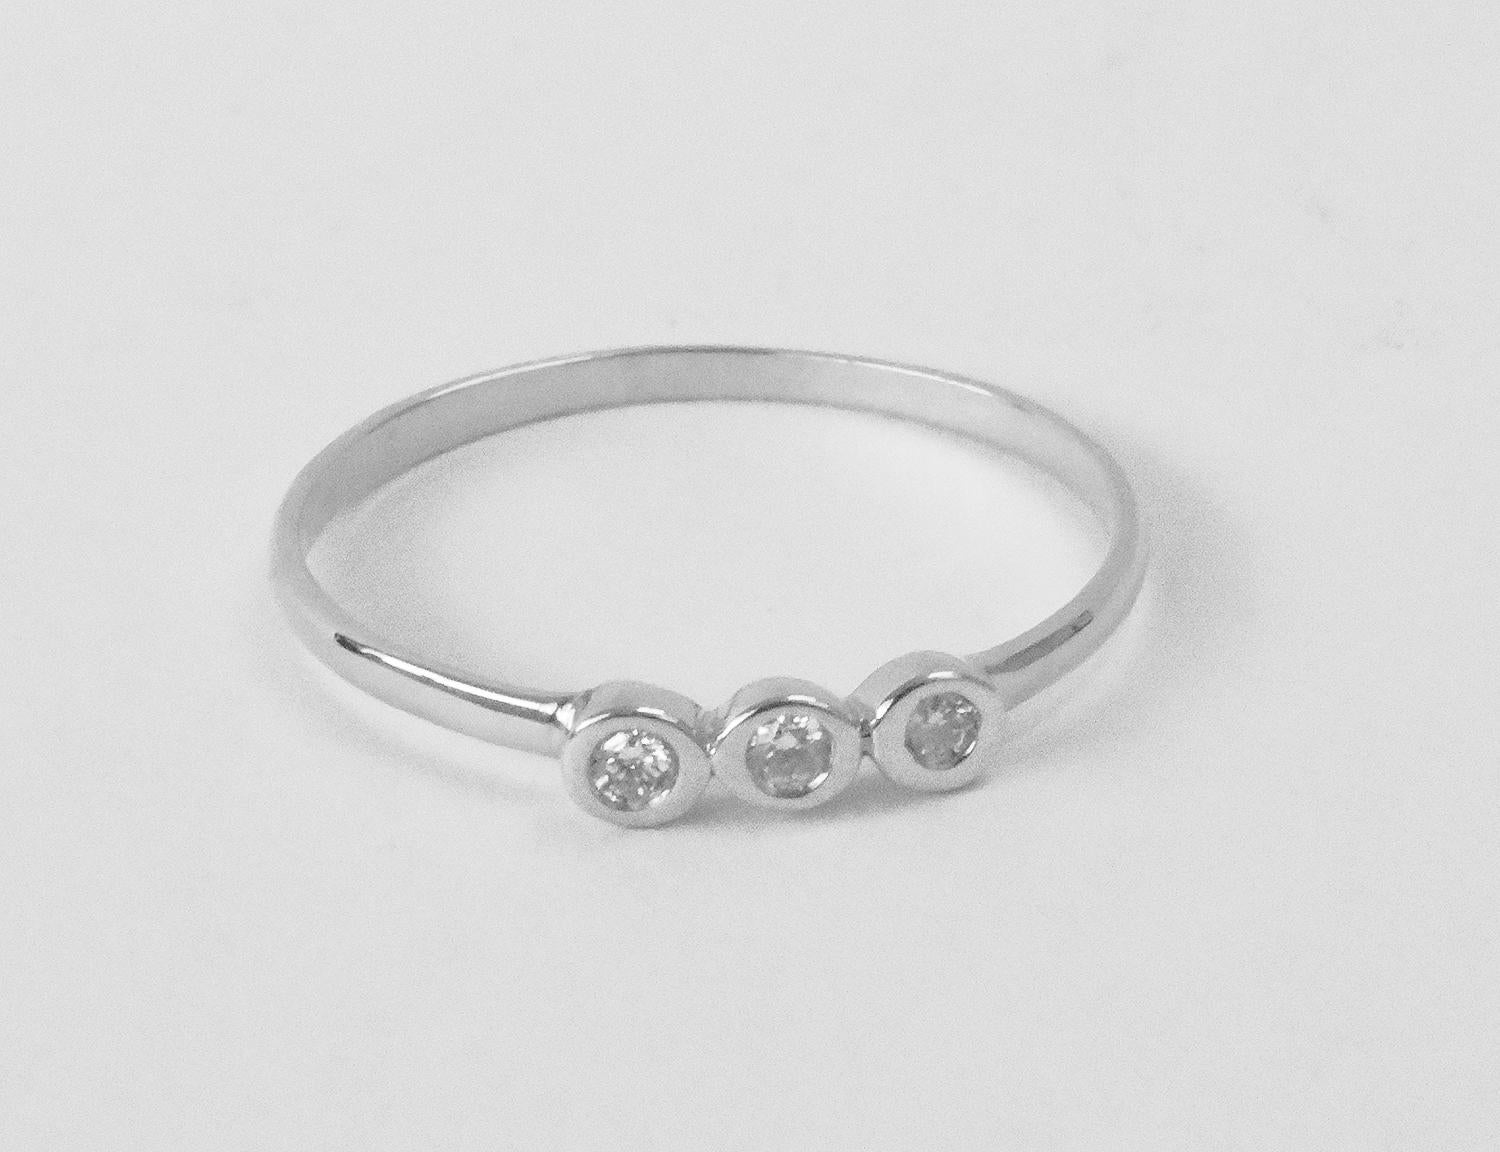 For Sale:  14k Gold Diamond 1.9 mm Ring Bezel Setting Three Diamond Ring Trio Diamond Ring 4